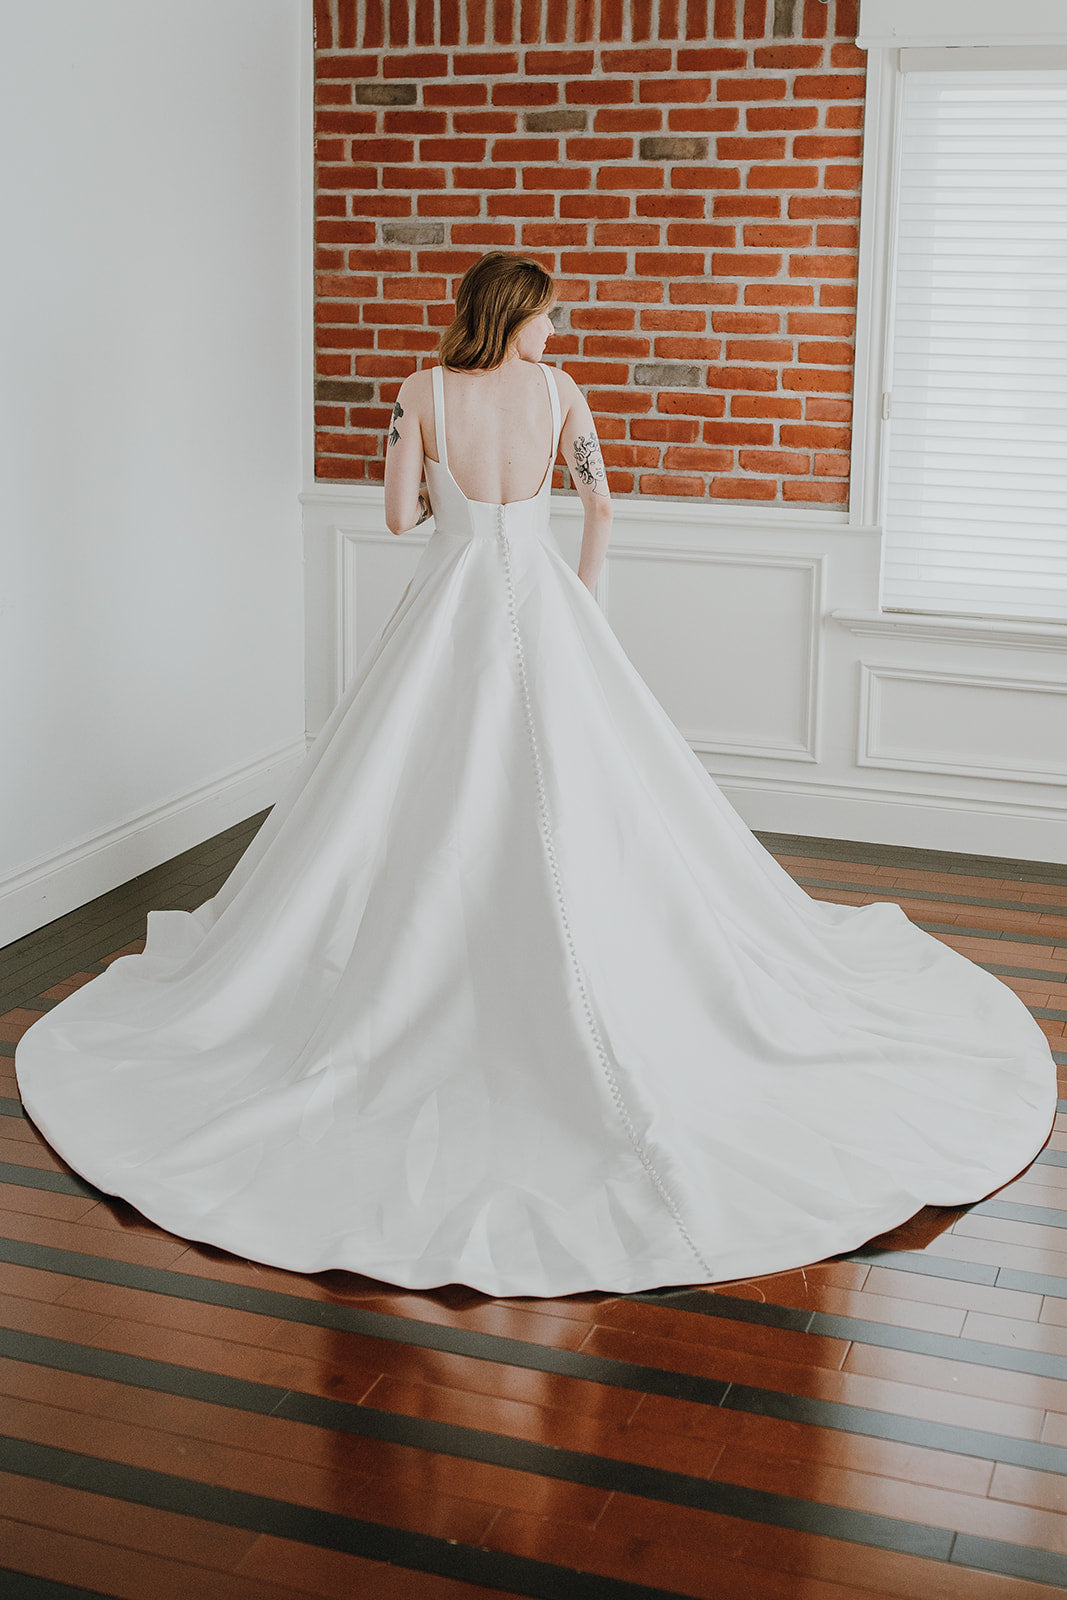 *EXCLUSIVITÉ* Moritz - robe de mariée classique à décolleté carré et dos moderne